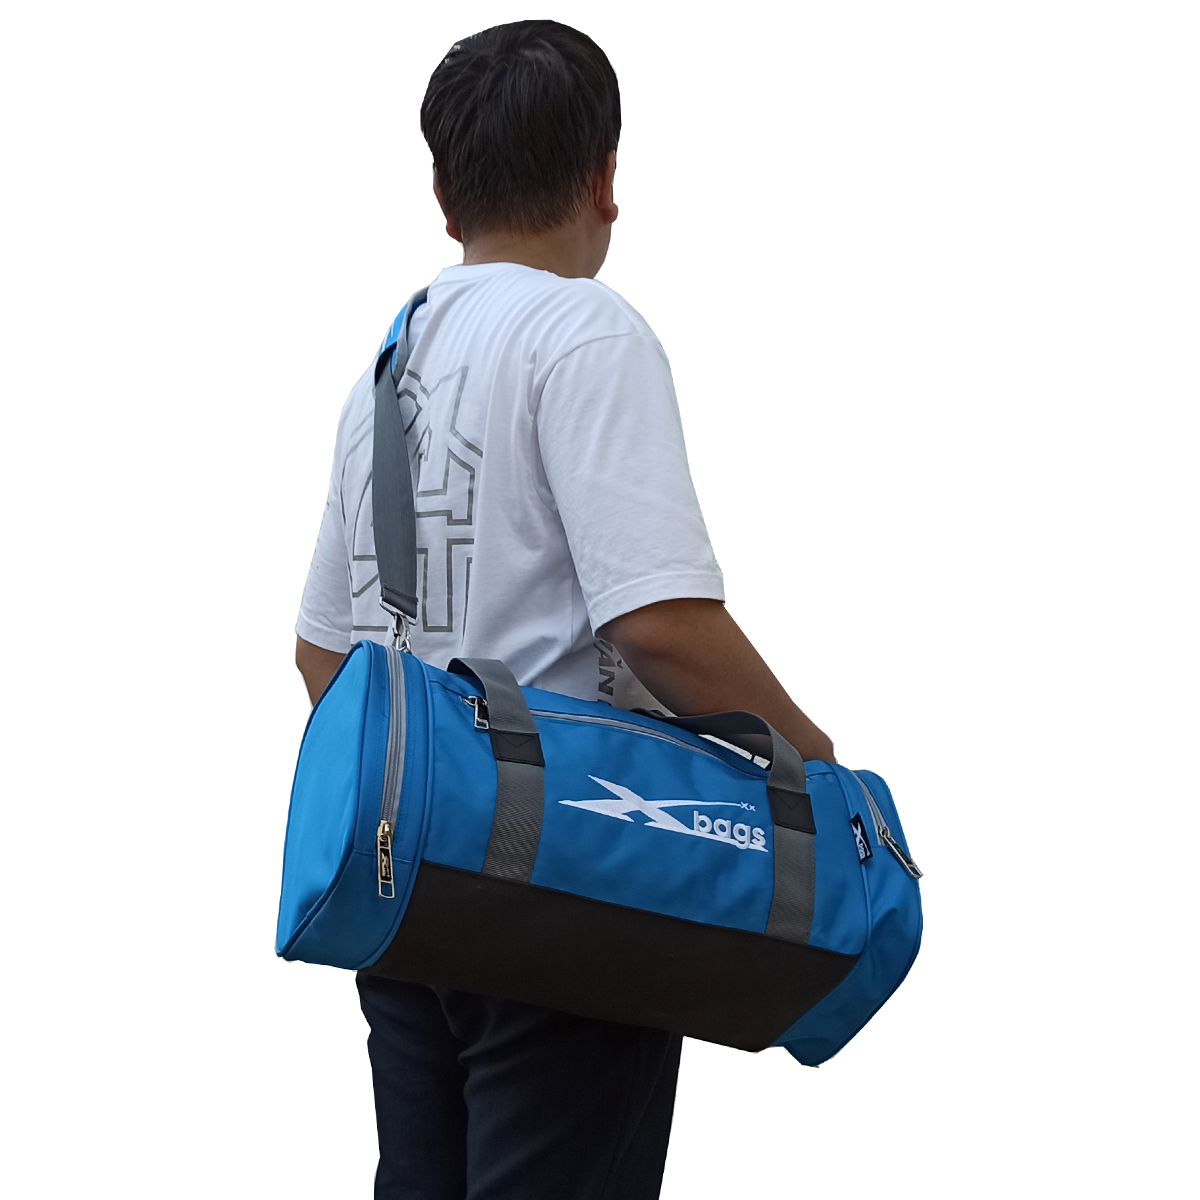 Túi trống du lịch chống nước XBAGS Xb 6003 túi thể thao nhỏ gọn